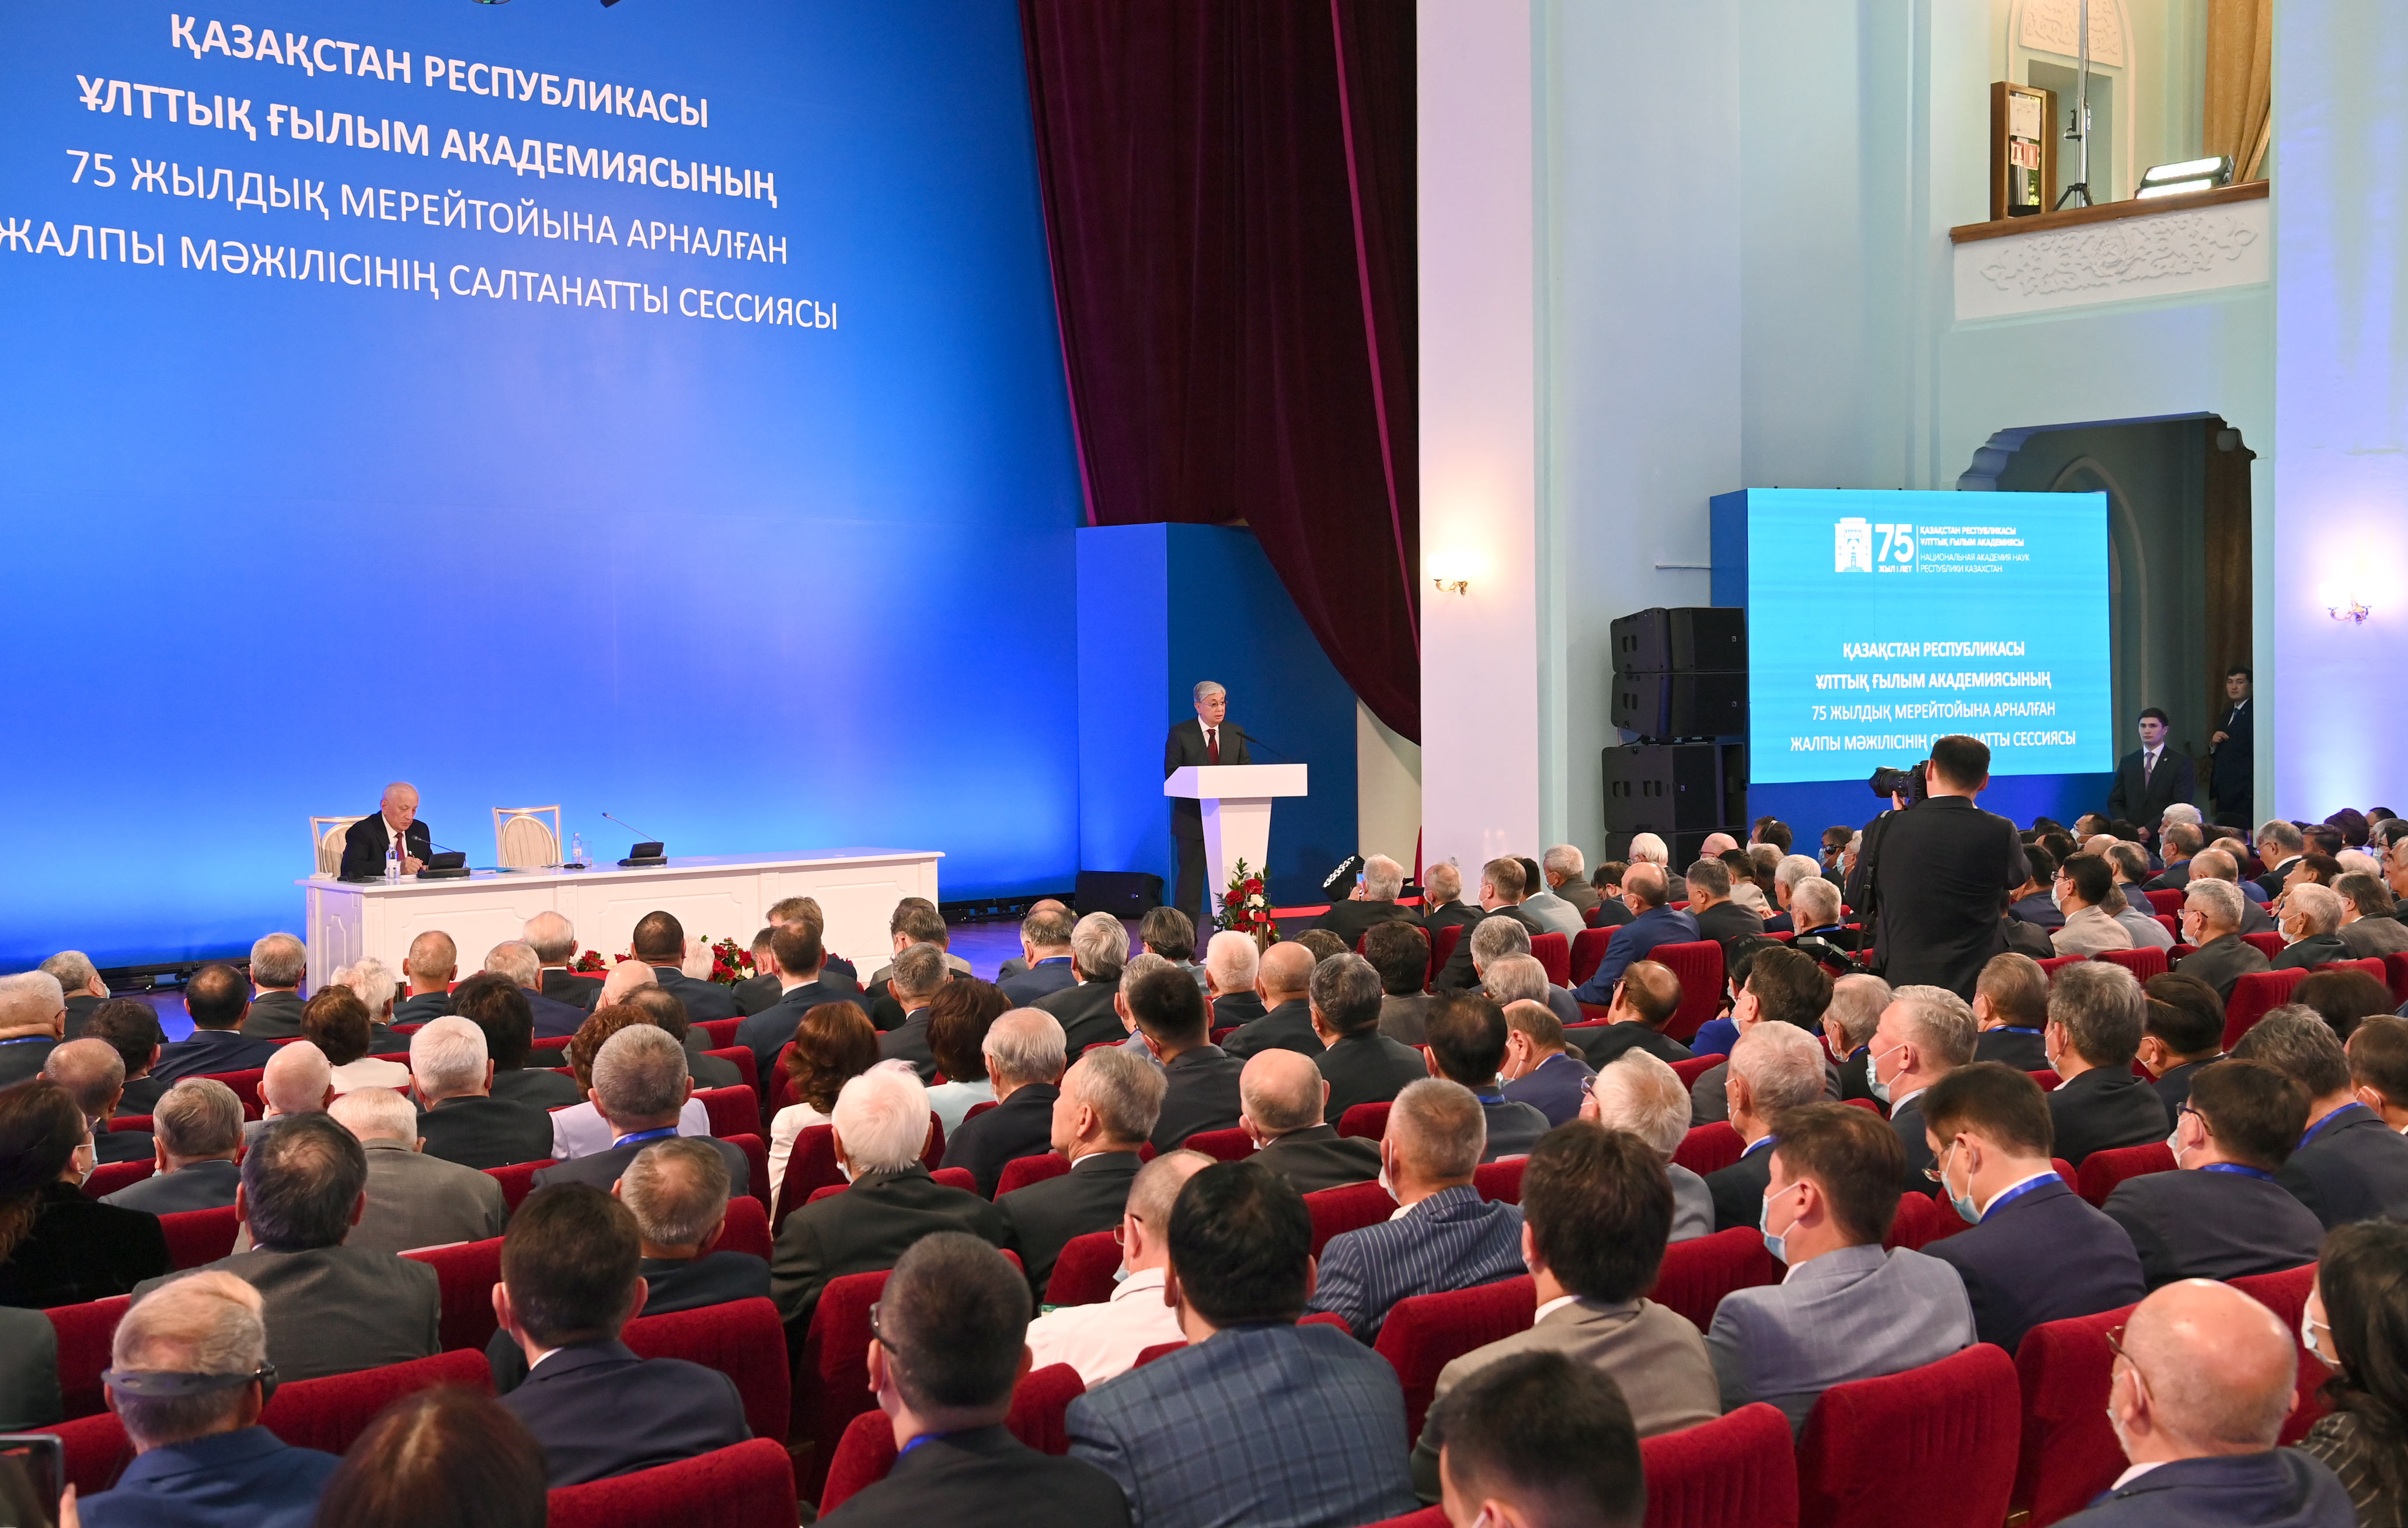 О чем говорил Токаев на сессии Академии наук в Алматы